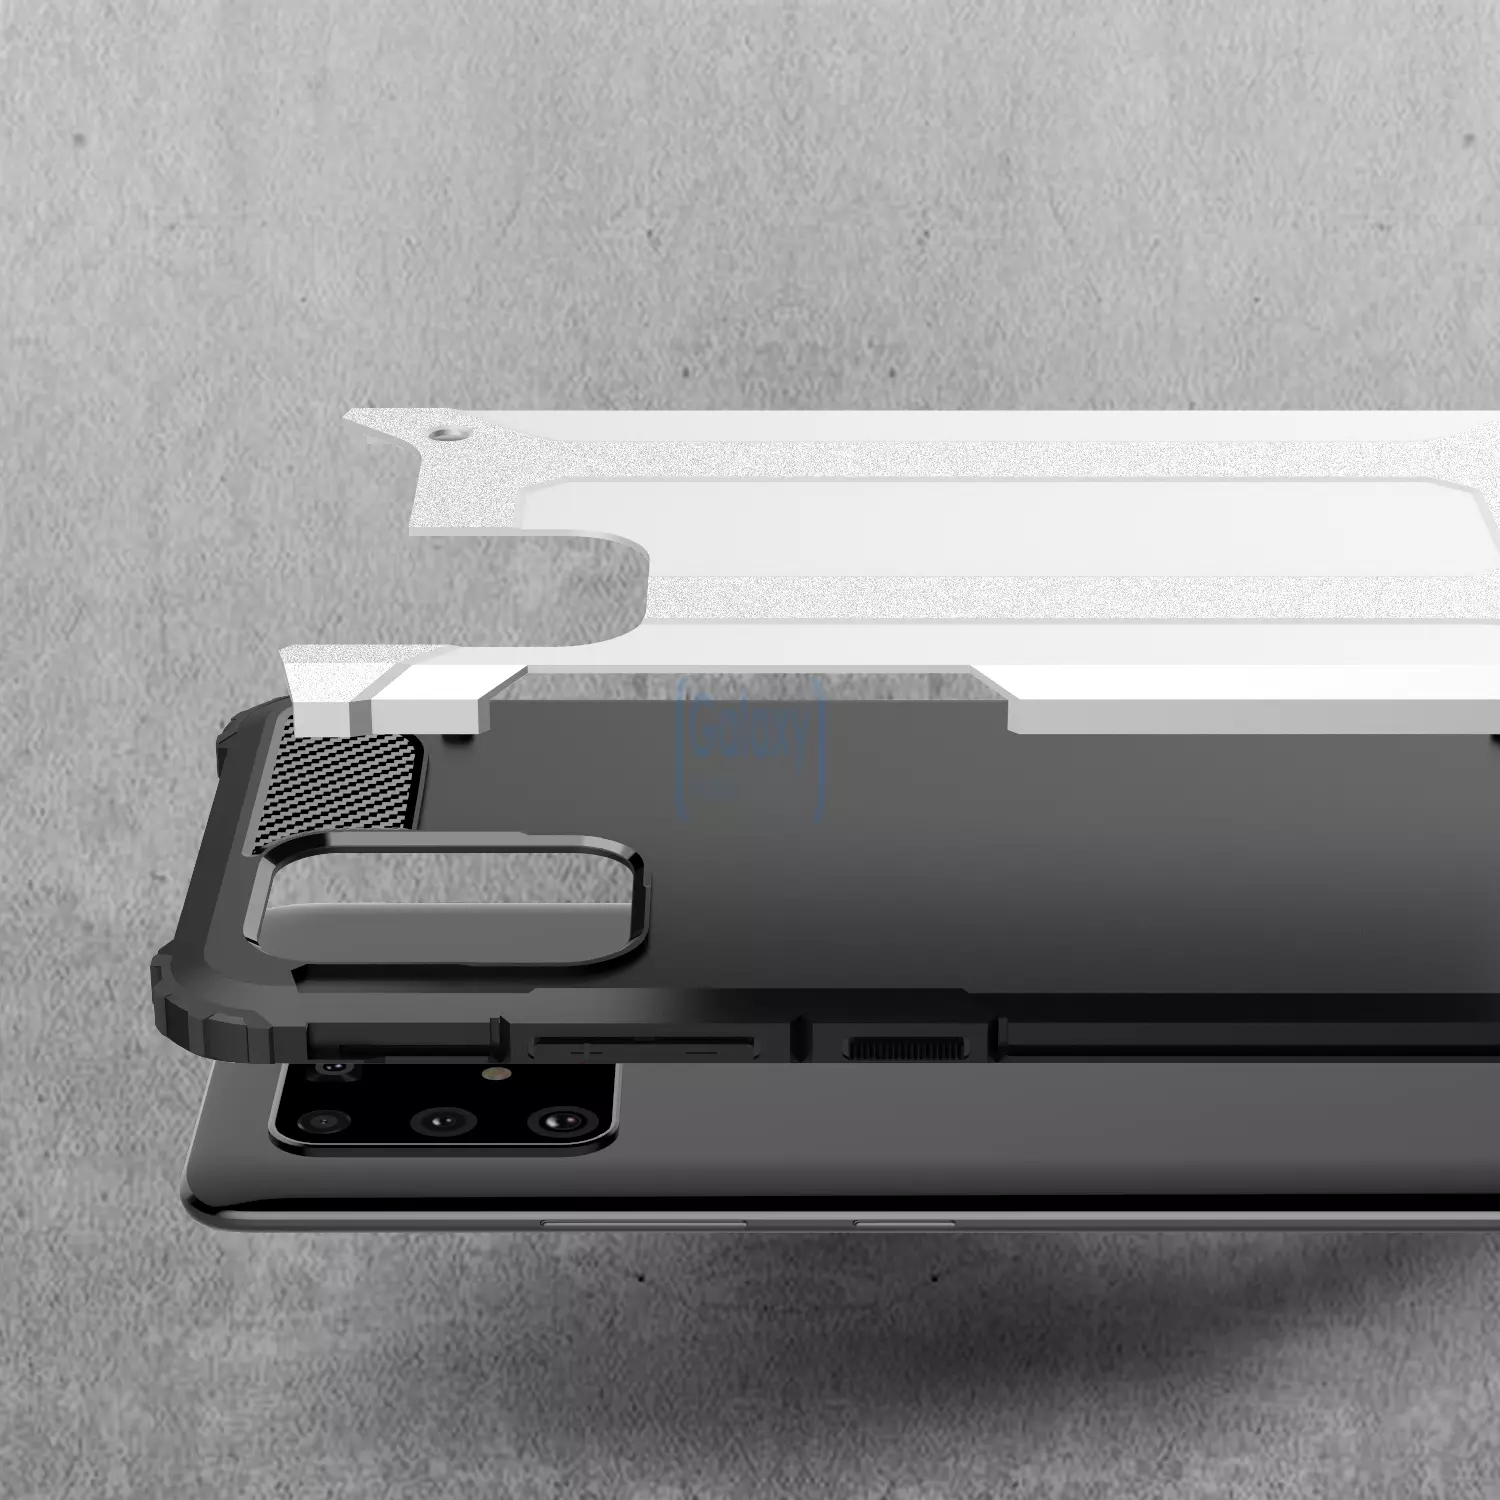 Чехол бампер Rugged Hybrid Tough Armor Case для Samsung Galaxy S10 Lite Black (Чёрный)